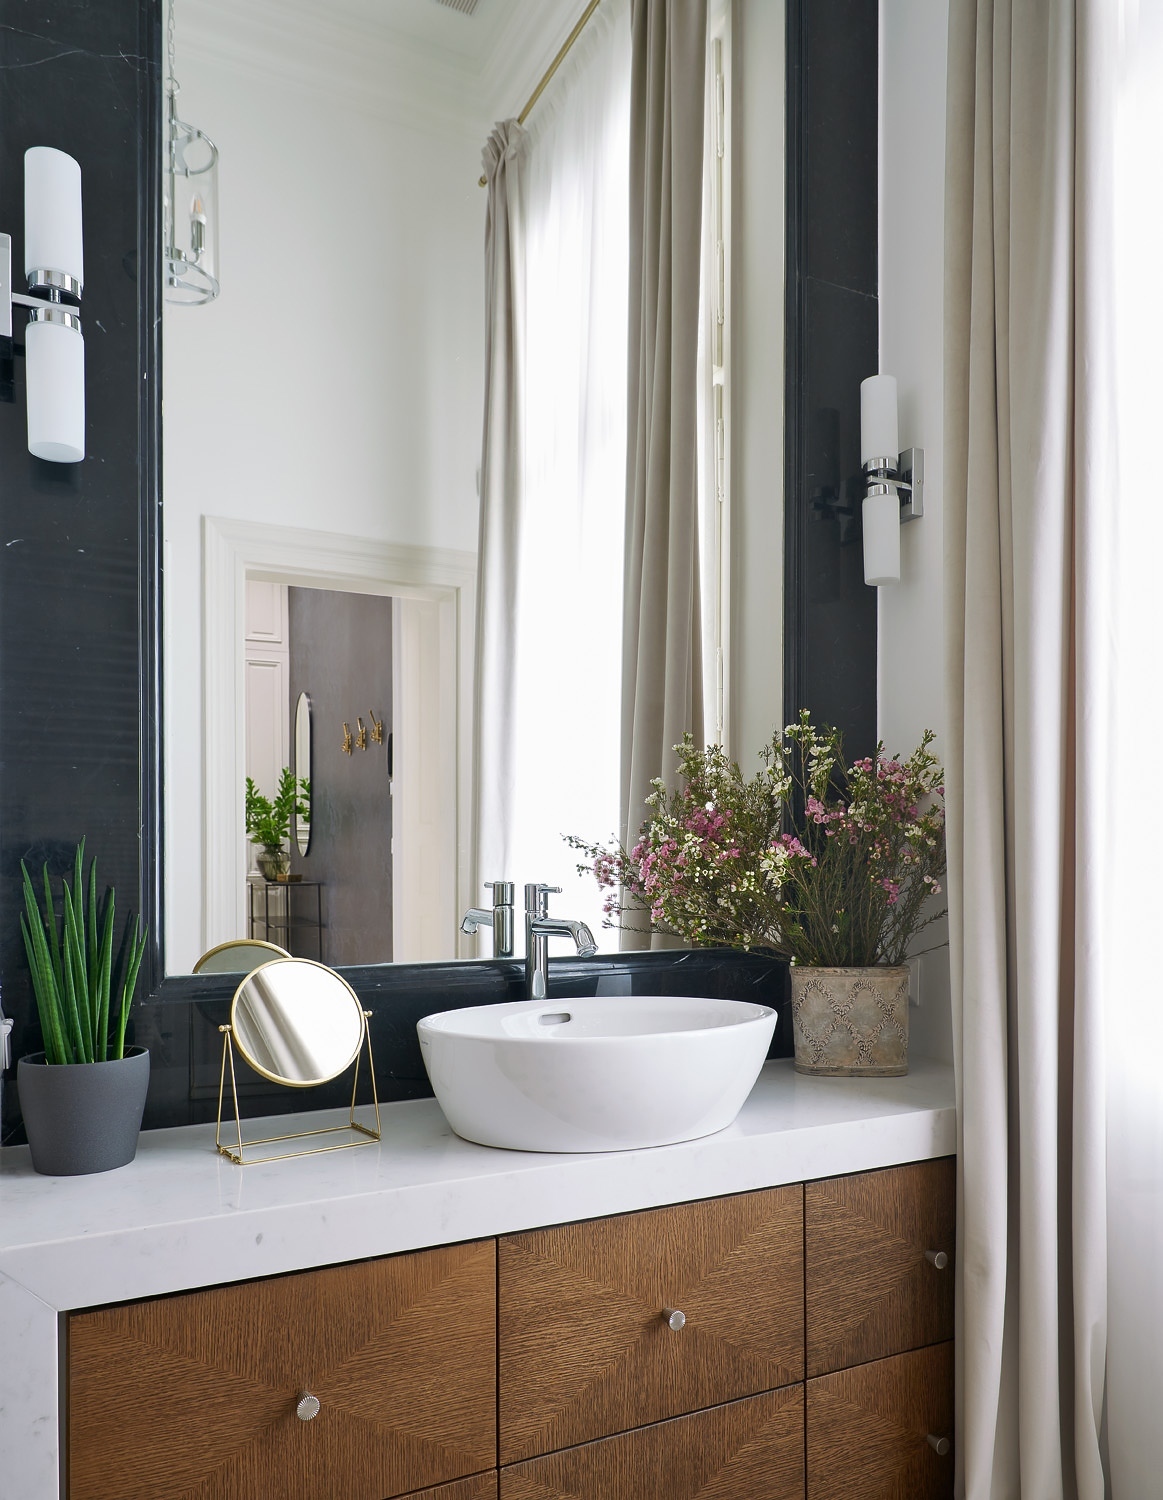 Mennyezetig érő márványkeretes tükör, egyedi tölgyfa mosdószekrény és a földig érő függöny teszi igazán szobaszerűvé a fürdőszobát.